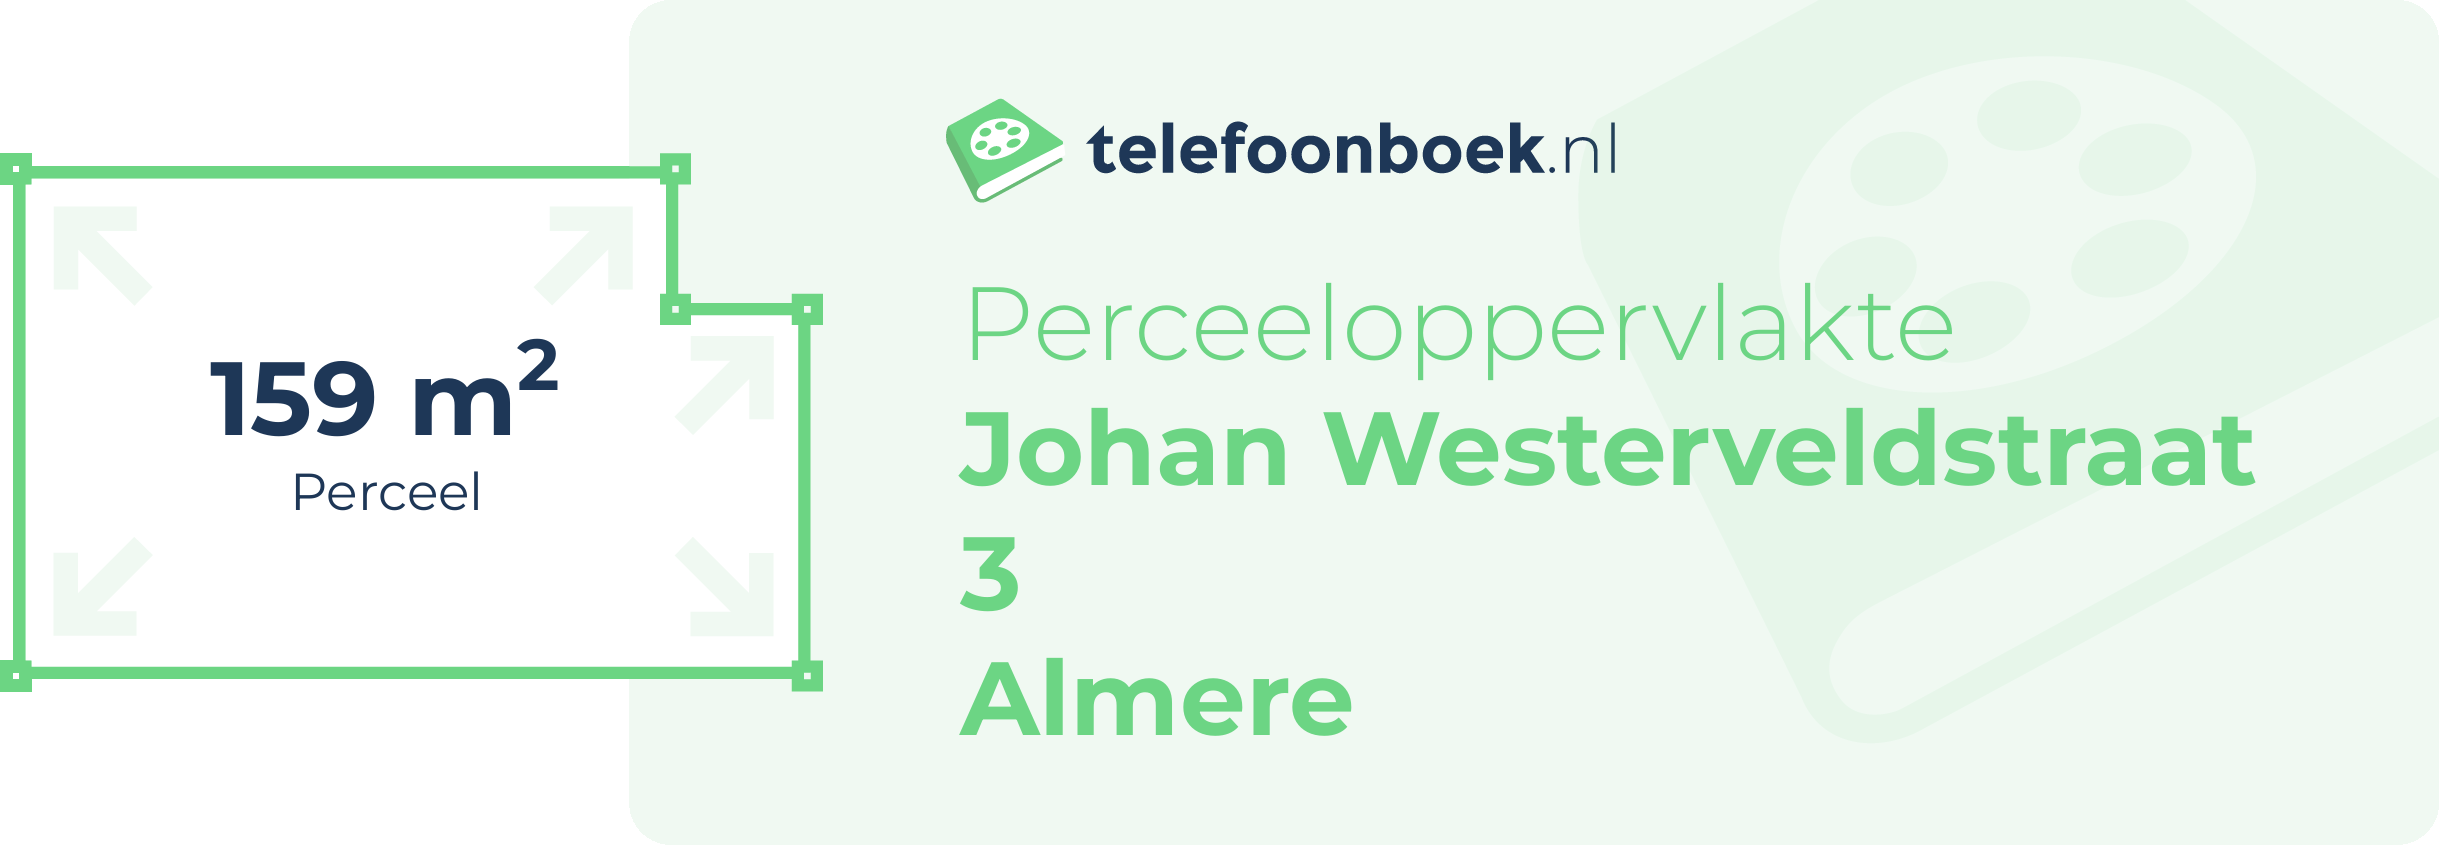 Perceeloppervlakte Johan Westerveldstraat 3 Almere